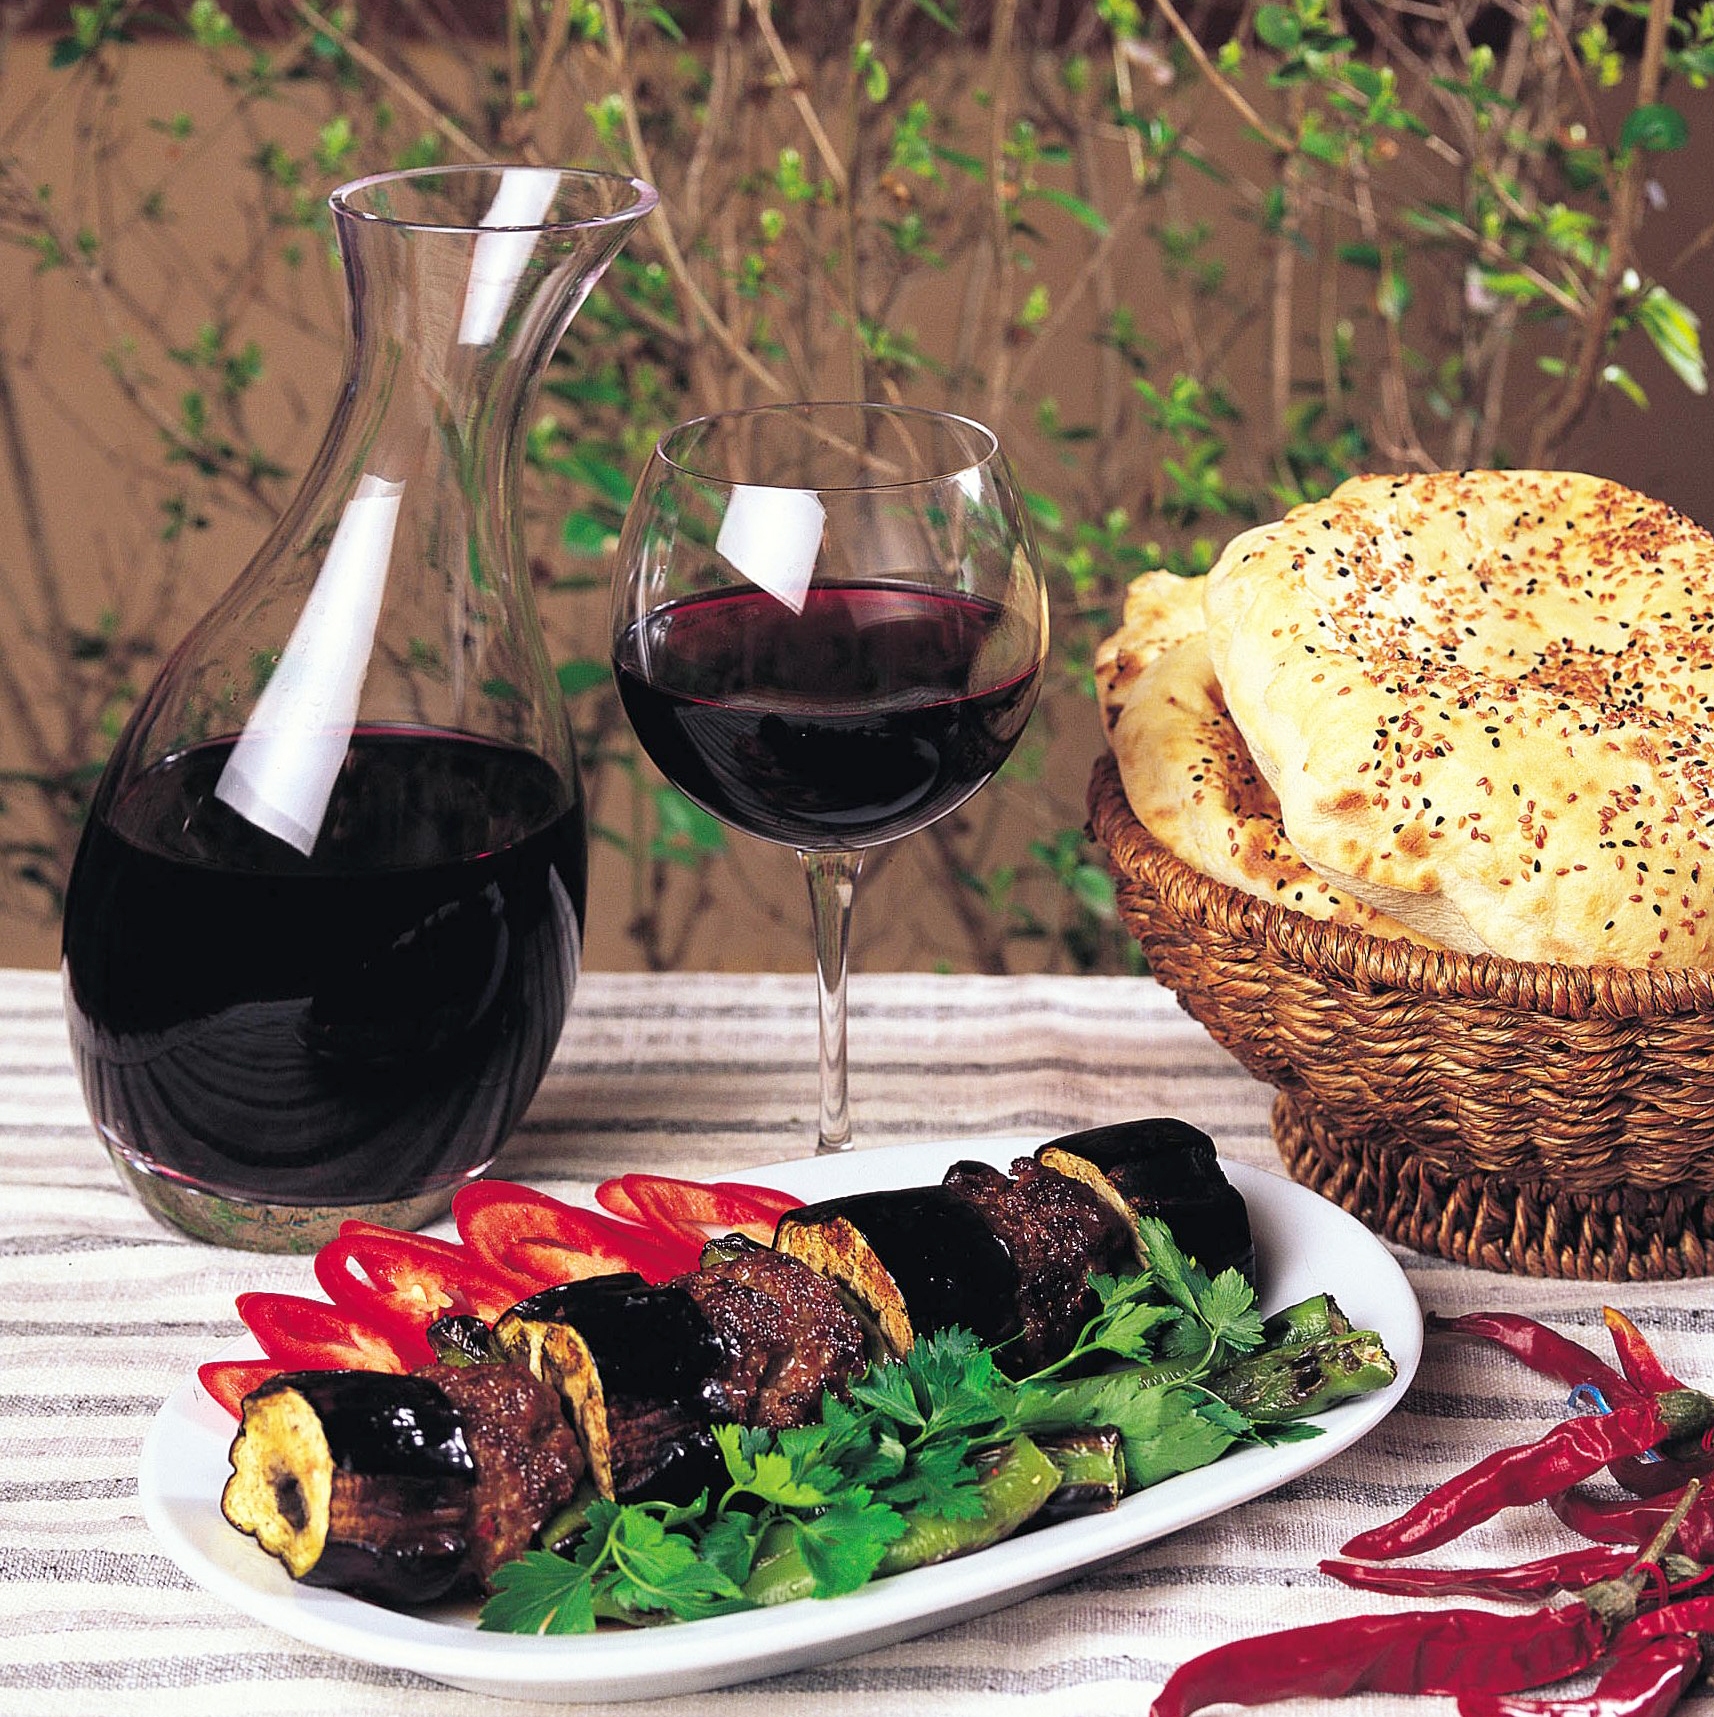 Öküzgözü,Türk mutfağının libero şarabı. Kebaplarla bile iyi uyum sağlıyor.